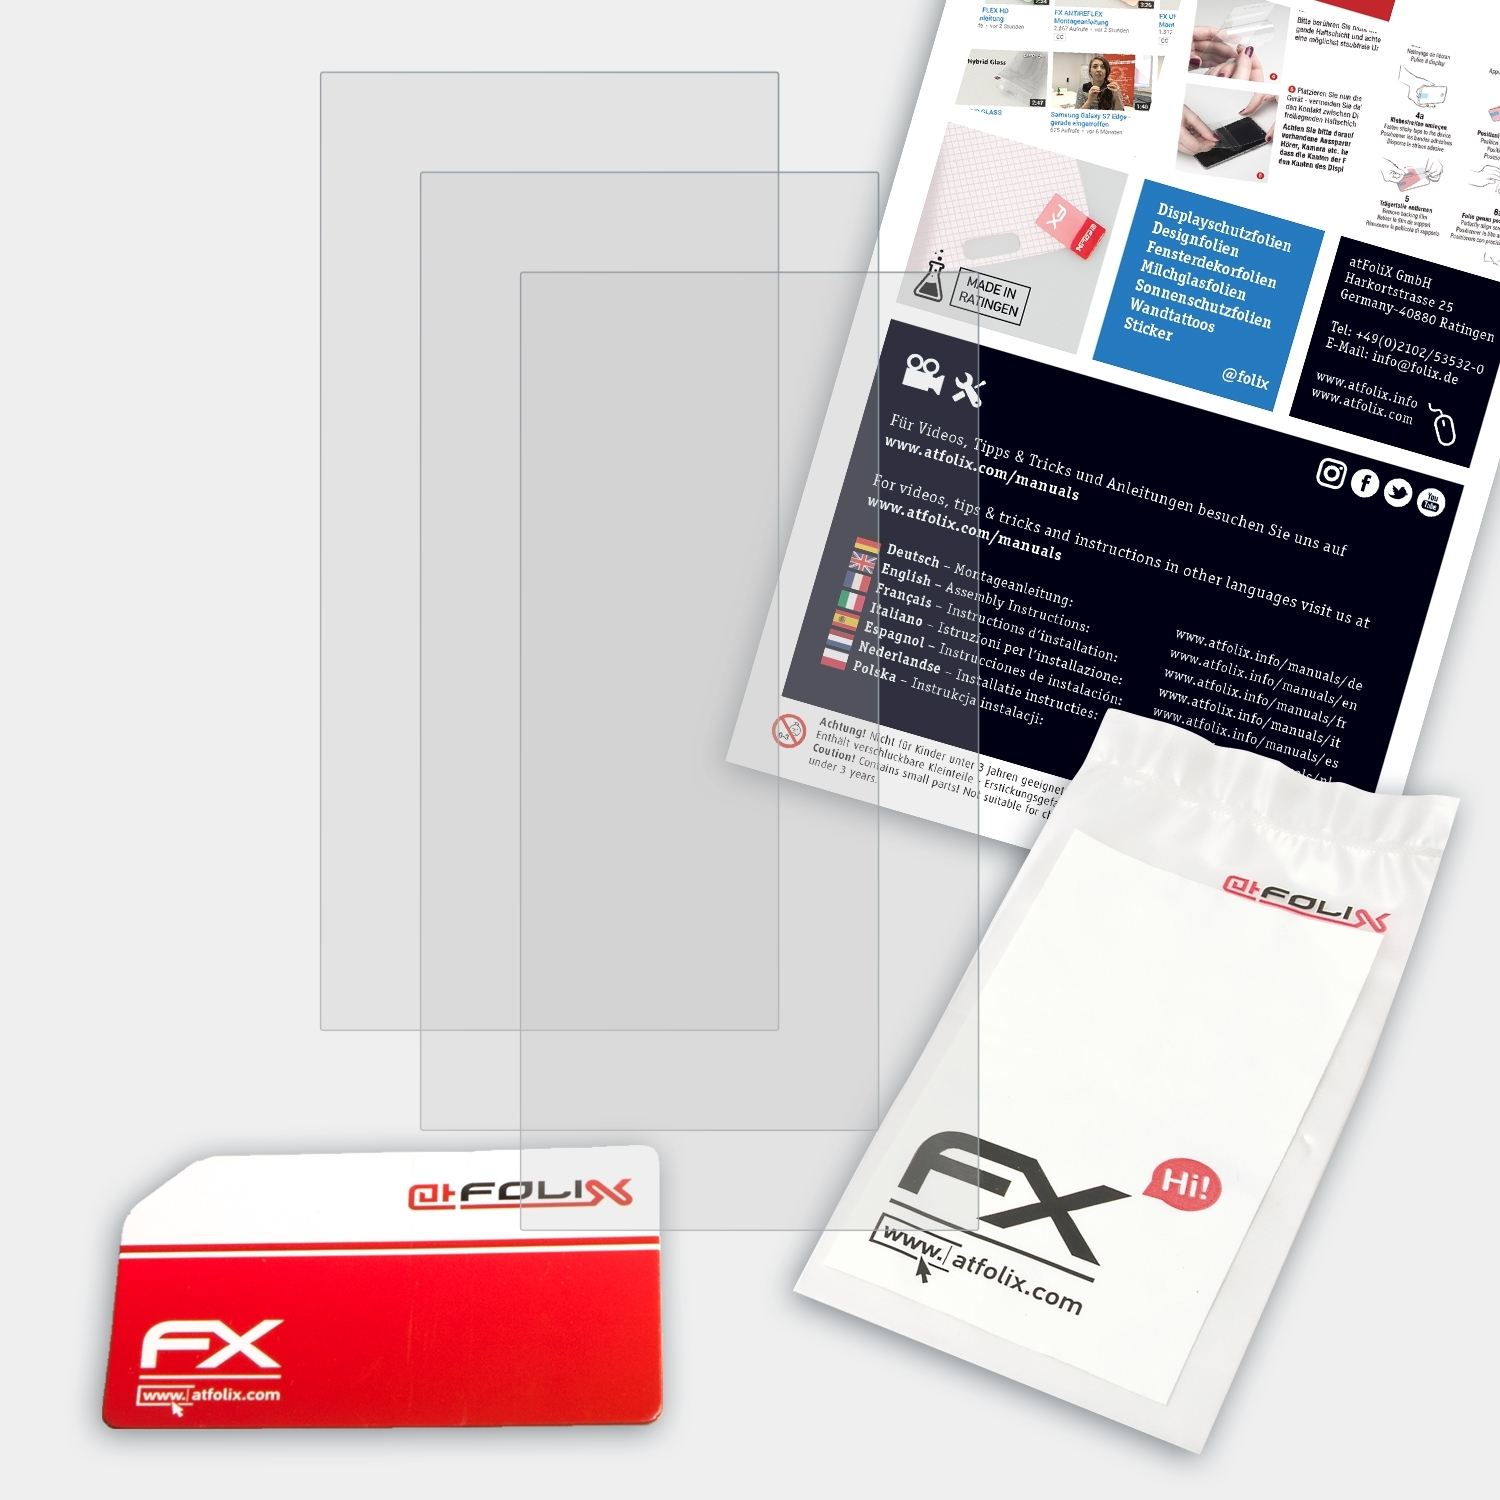 ATFOLIX 3x FX-Antireflex Displayschutz(für IRiver A&ultima SP1000M)